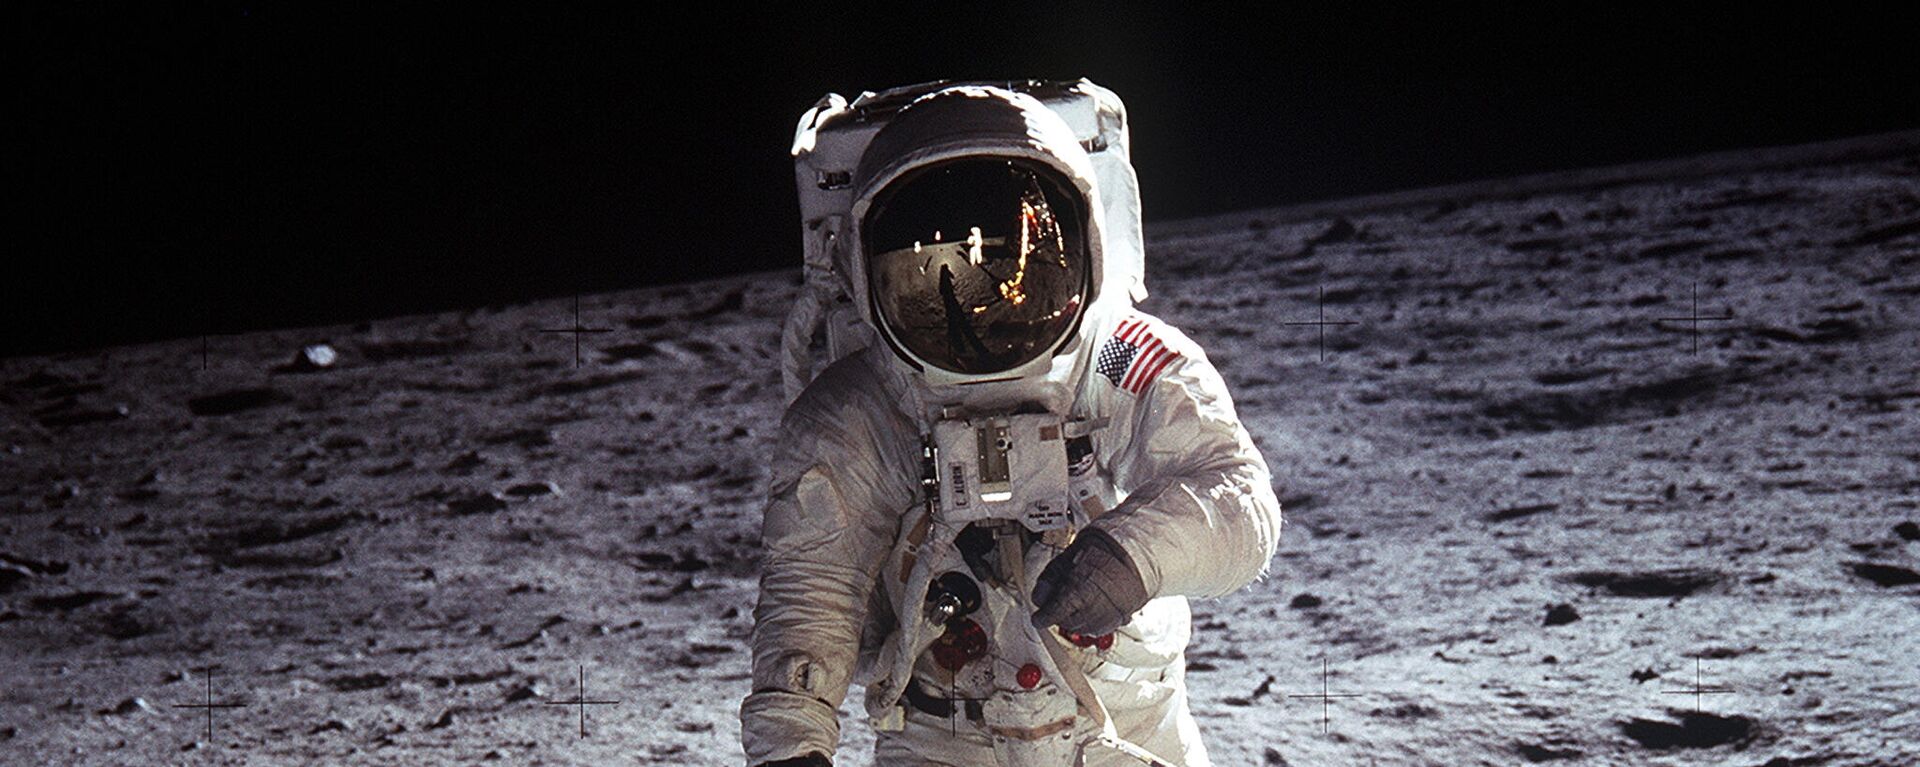 La icónica foto del Buzz Aldrin en la Luna en 1969 - Sputnik Mundo, 1920, 24.07.2021